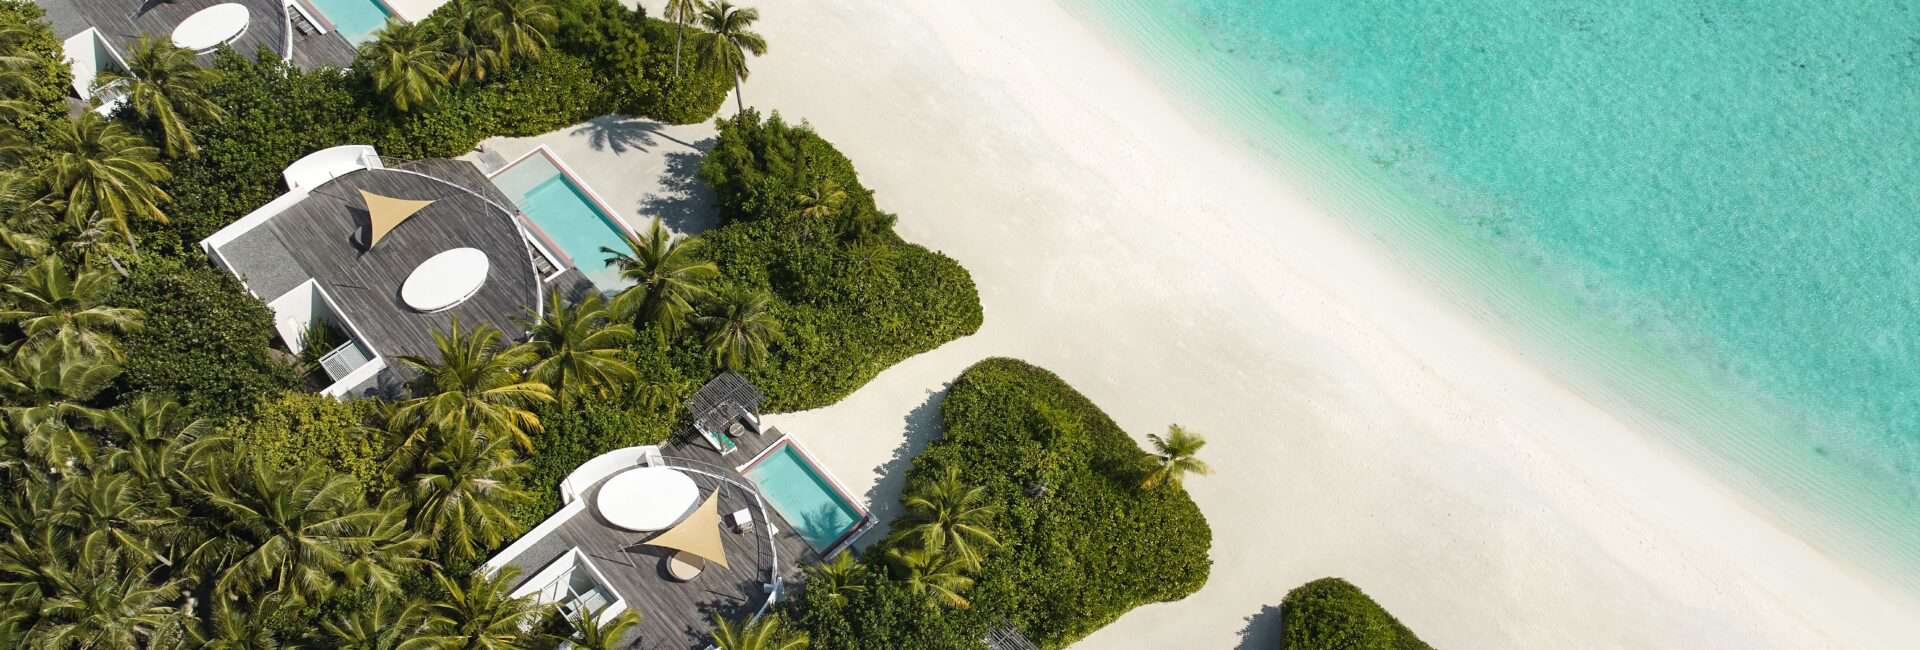 Jumeirah Maldives_High_resolution_300dpi-Jumeirah Maldives - Aerial Beach Villa